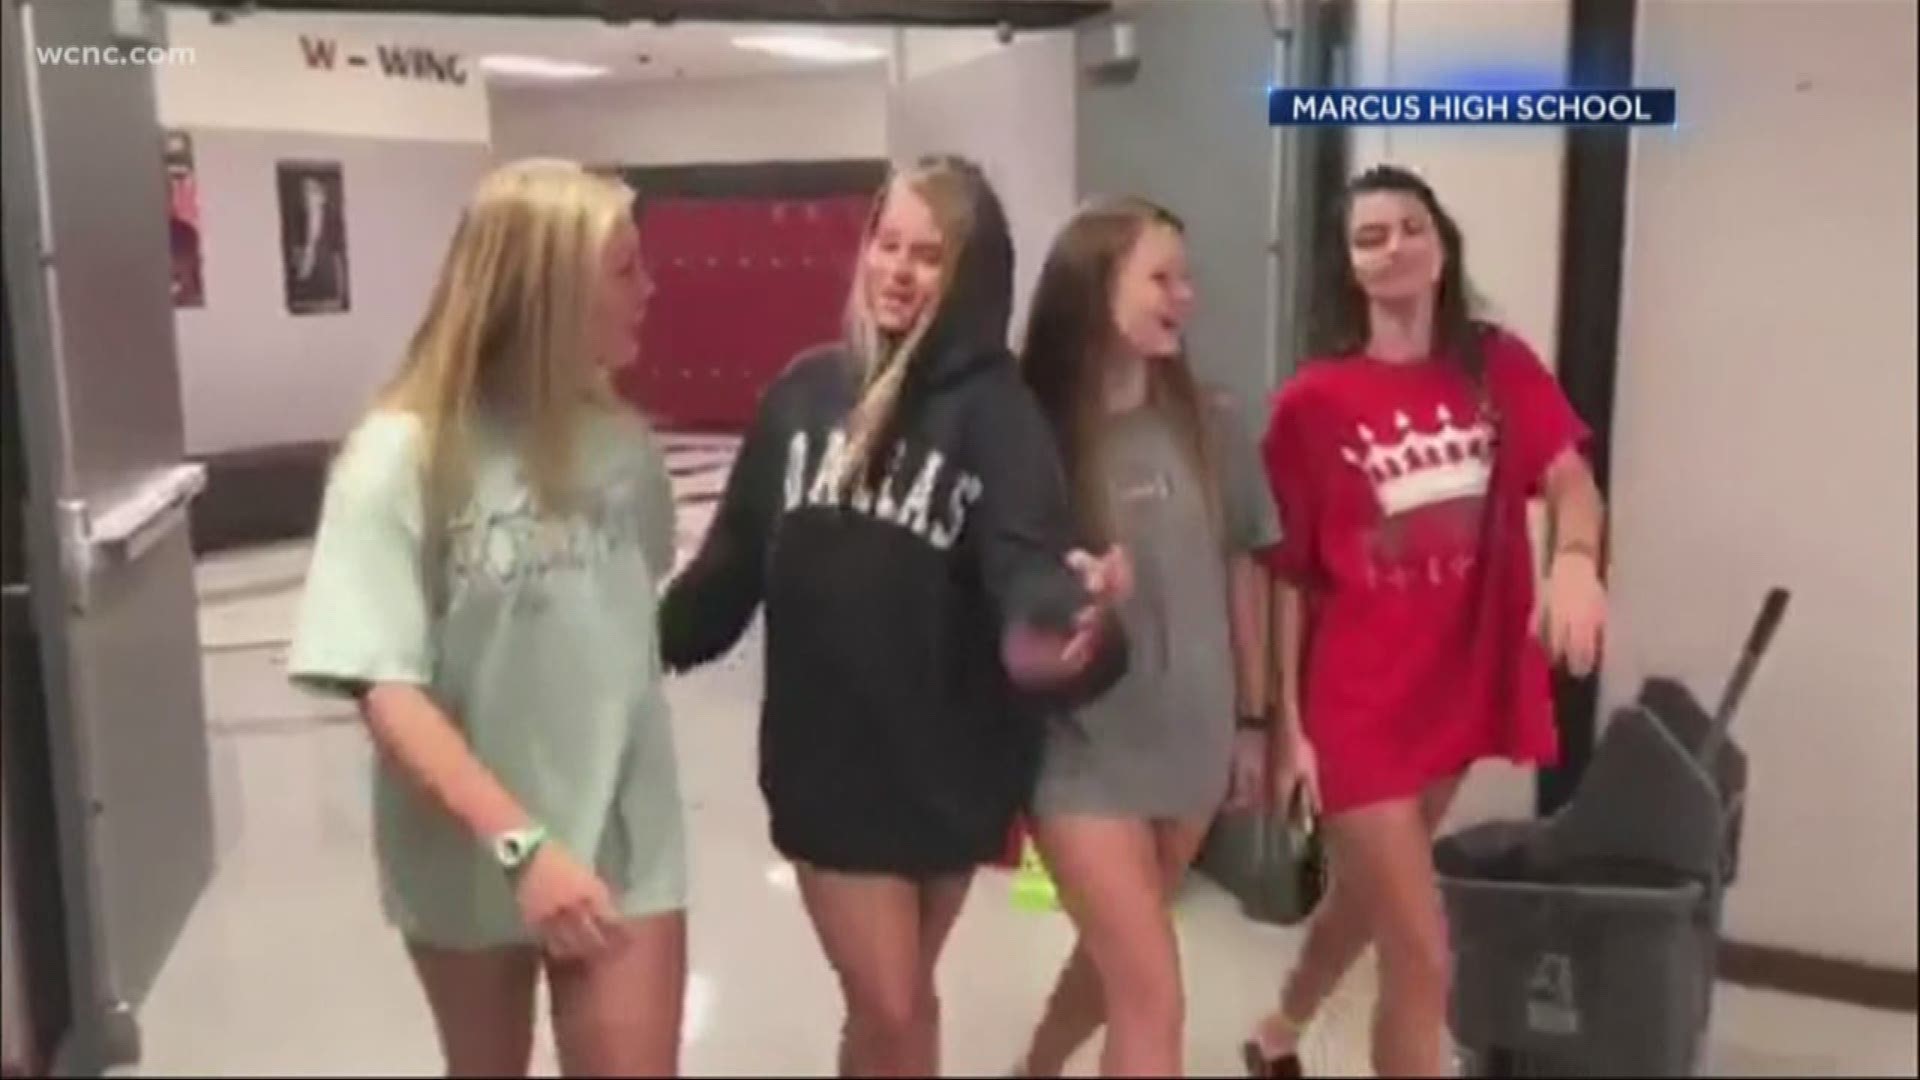 School's dress code video draws social media criticism